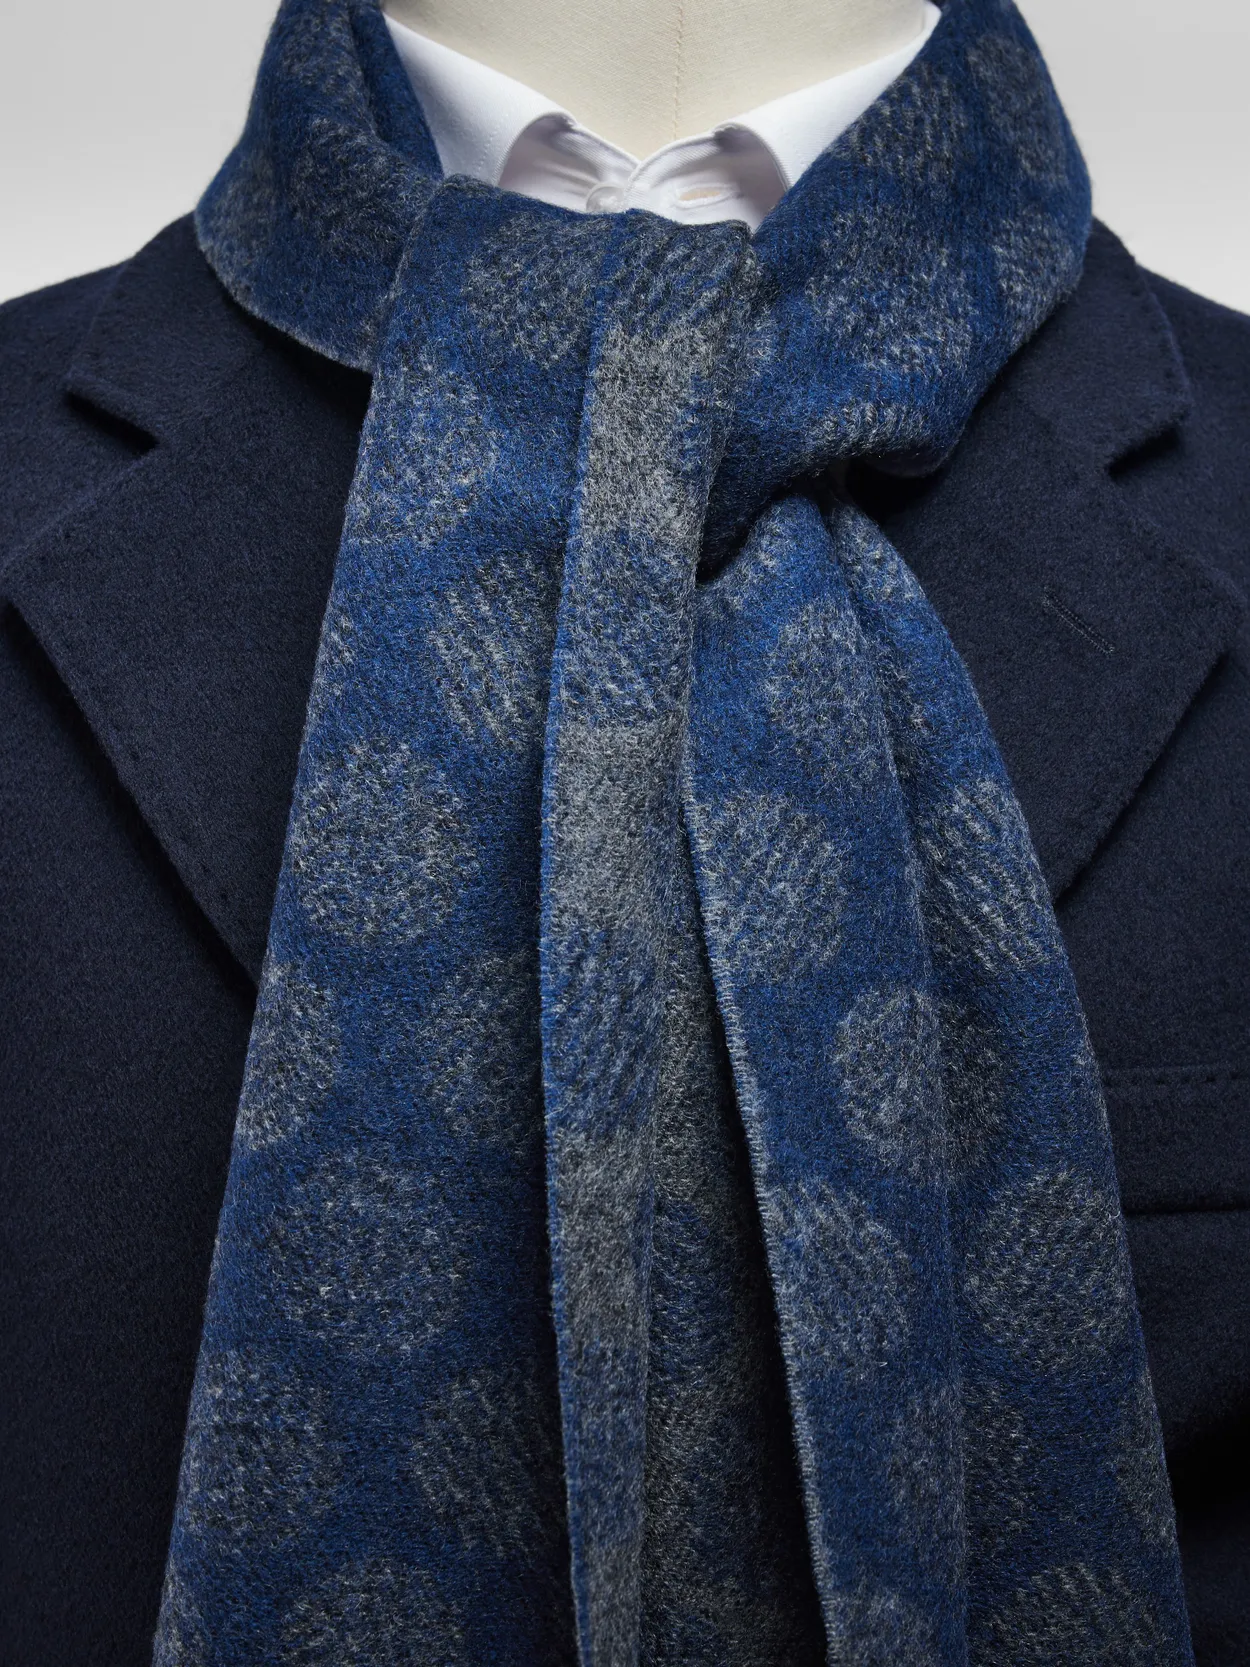 Blue Winter Scarf Wool